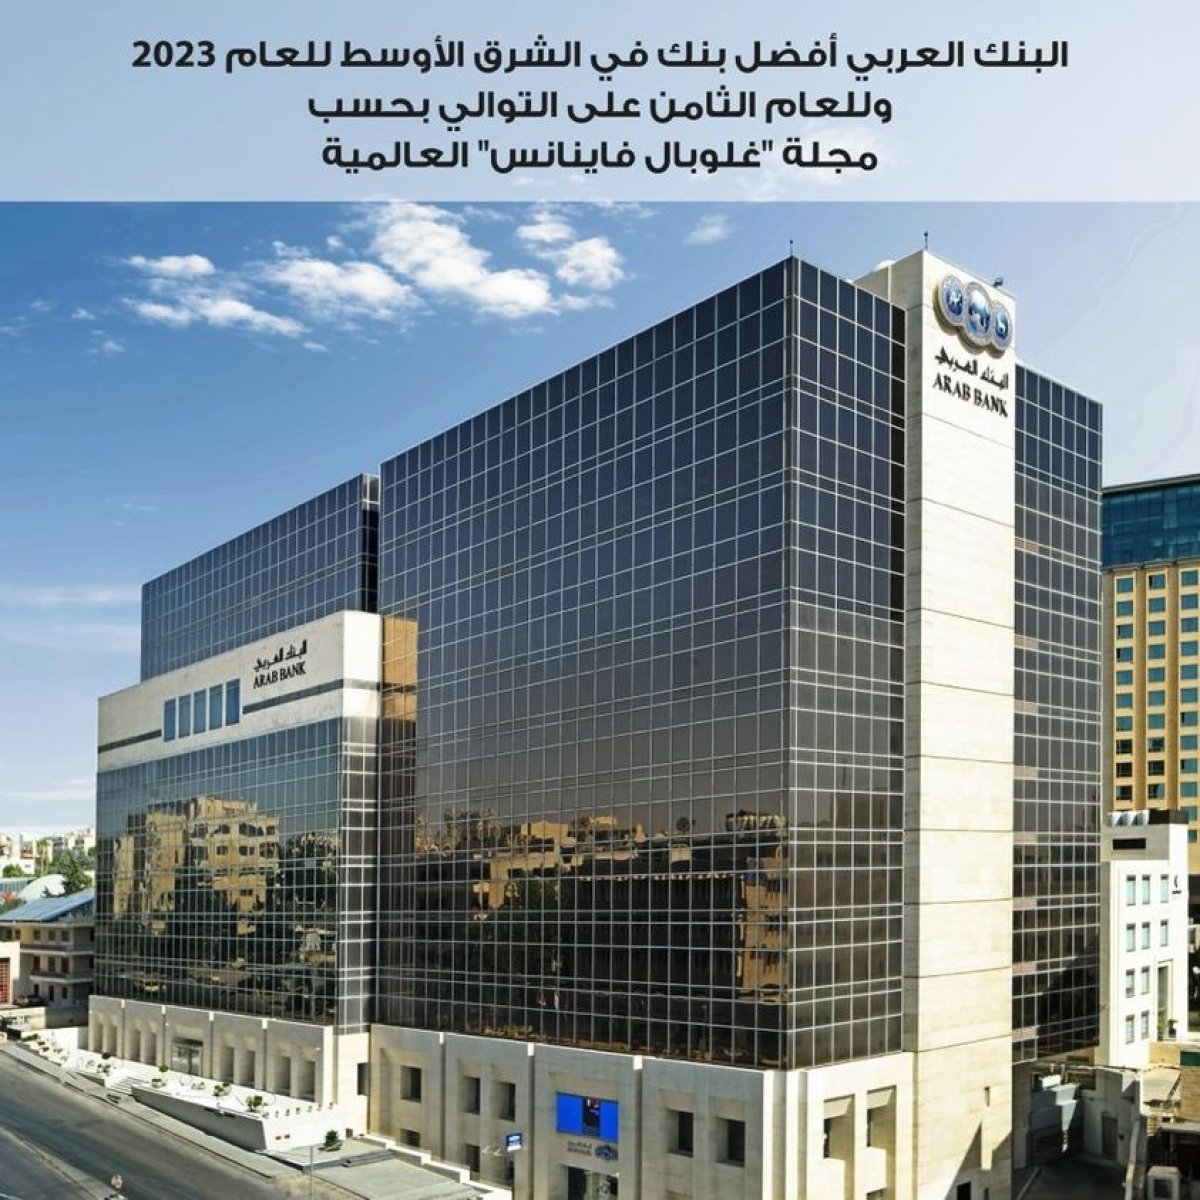 للعام الثامن على التوالي.. البنك العربي "أفضل بنك في الشرق الأوسط للعام 2023"